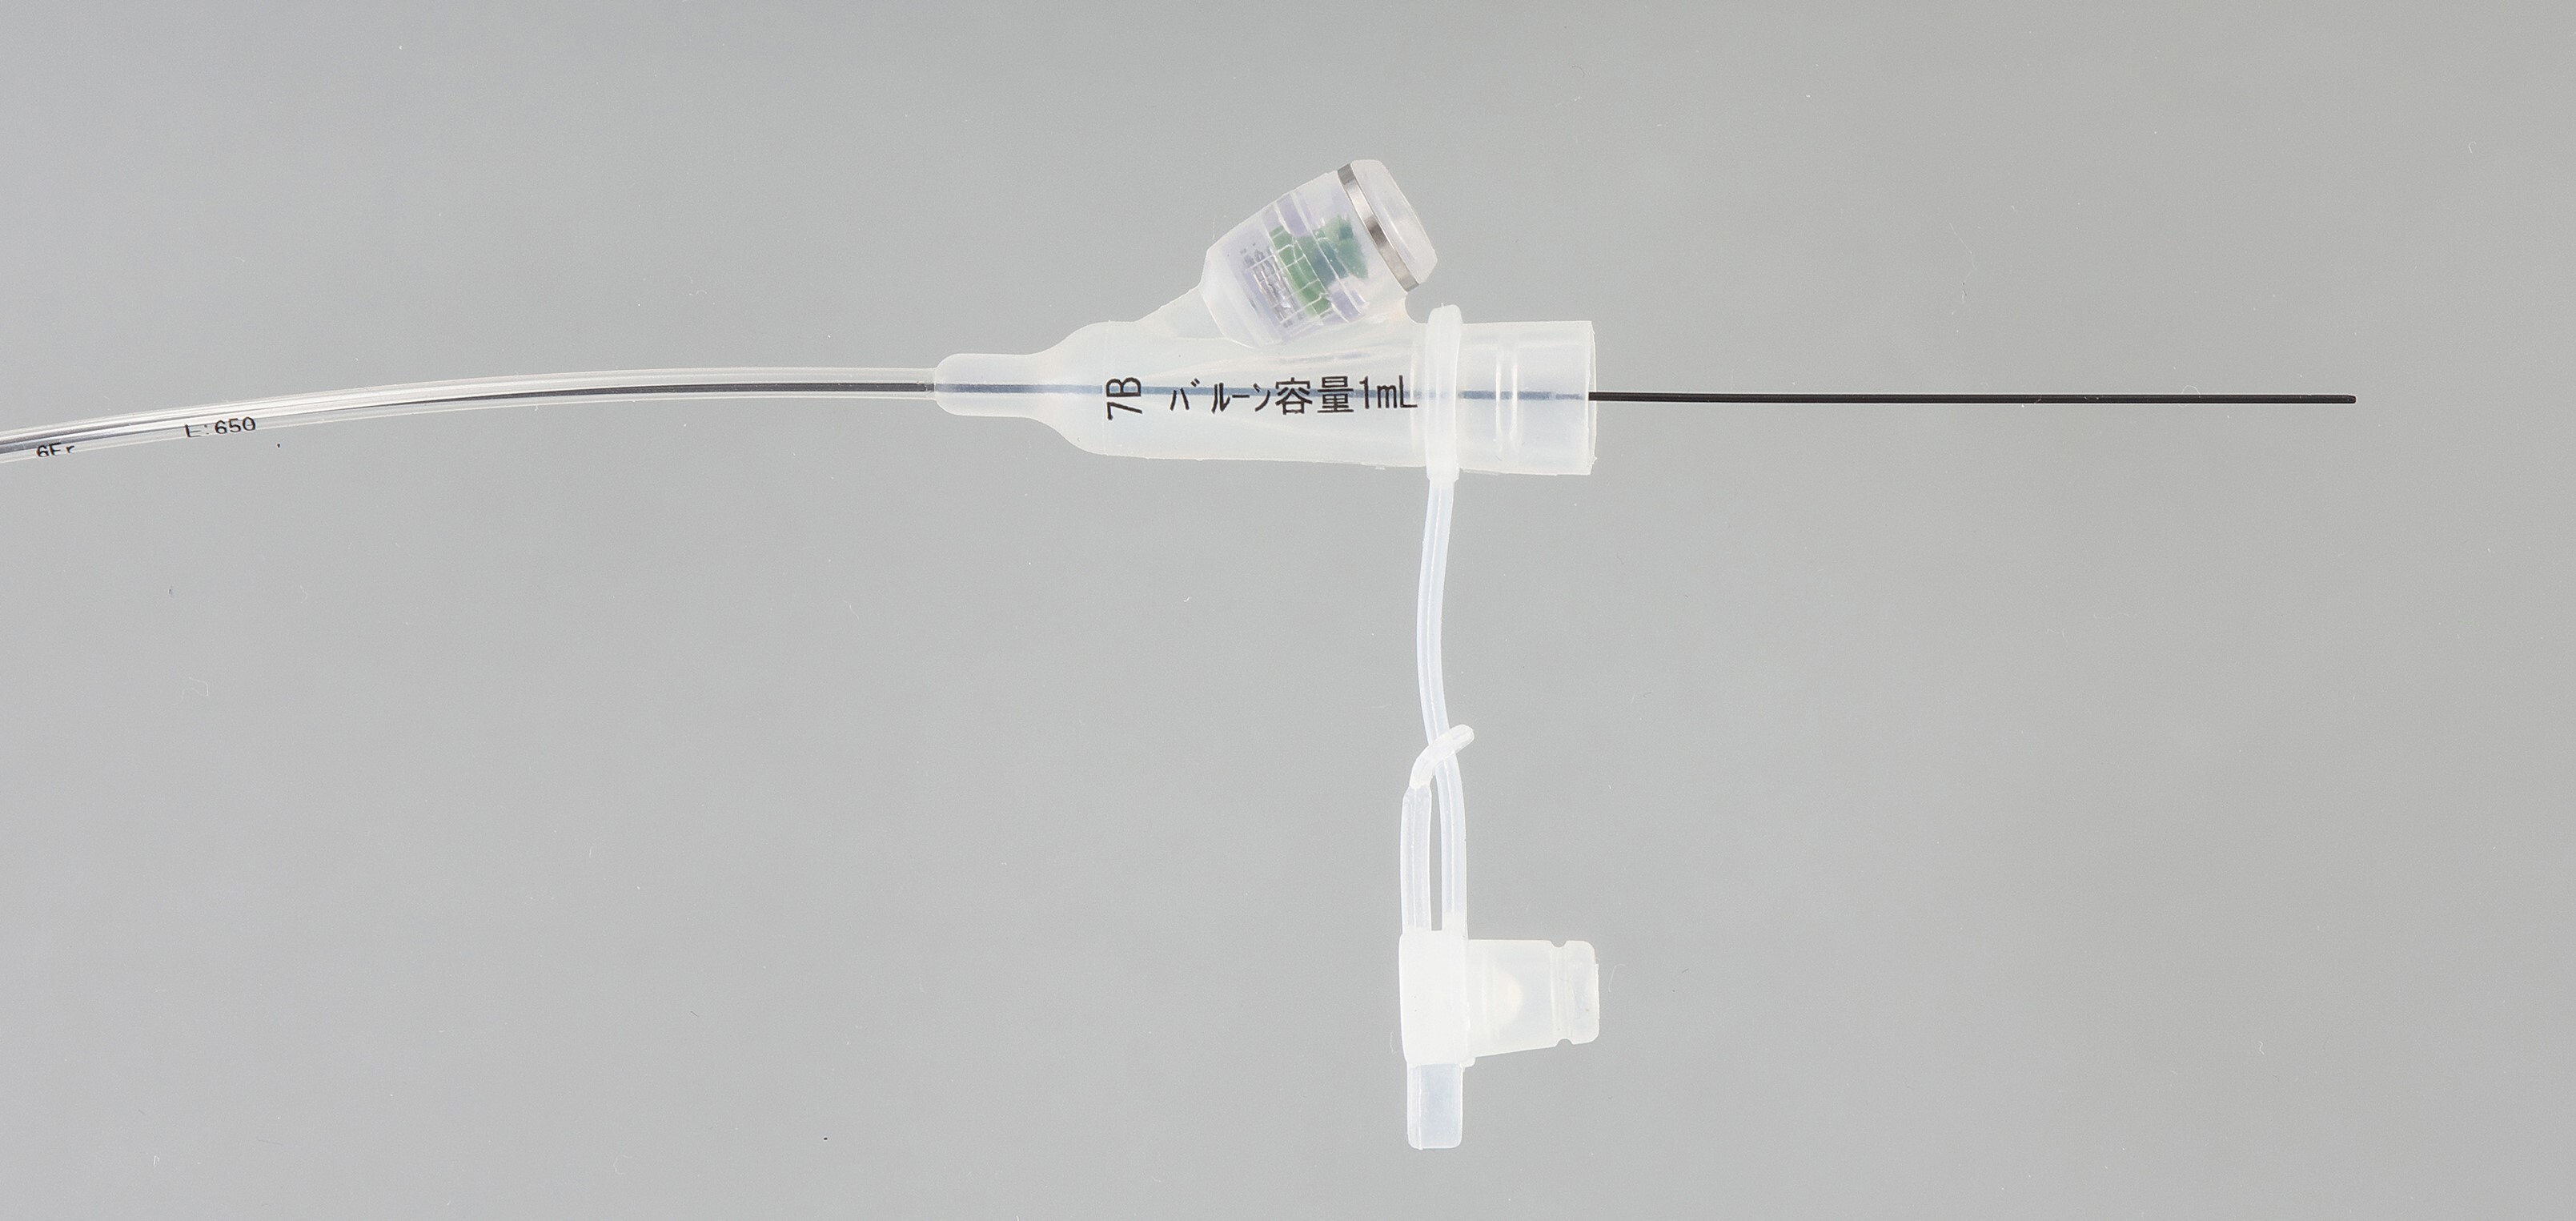 Tierrett Long Foley Catheter jpg-2